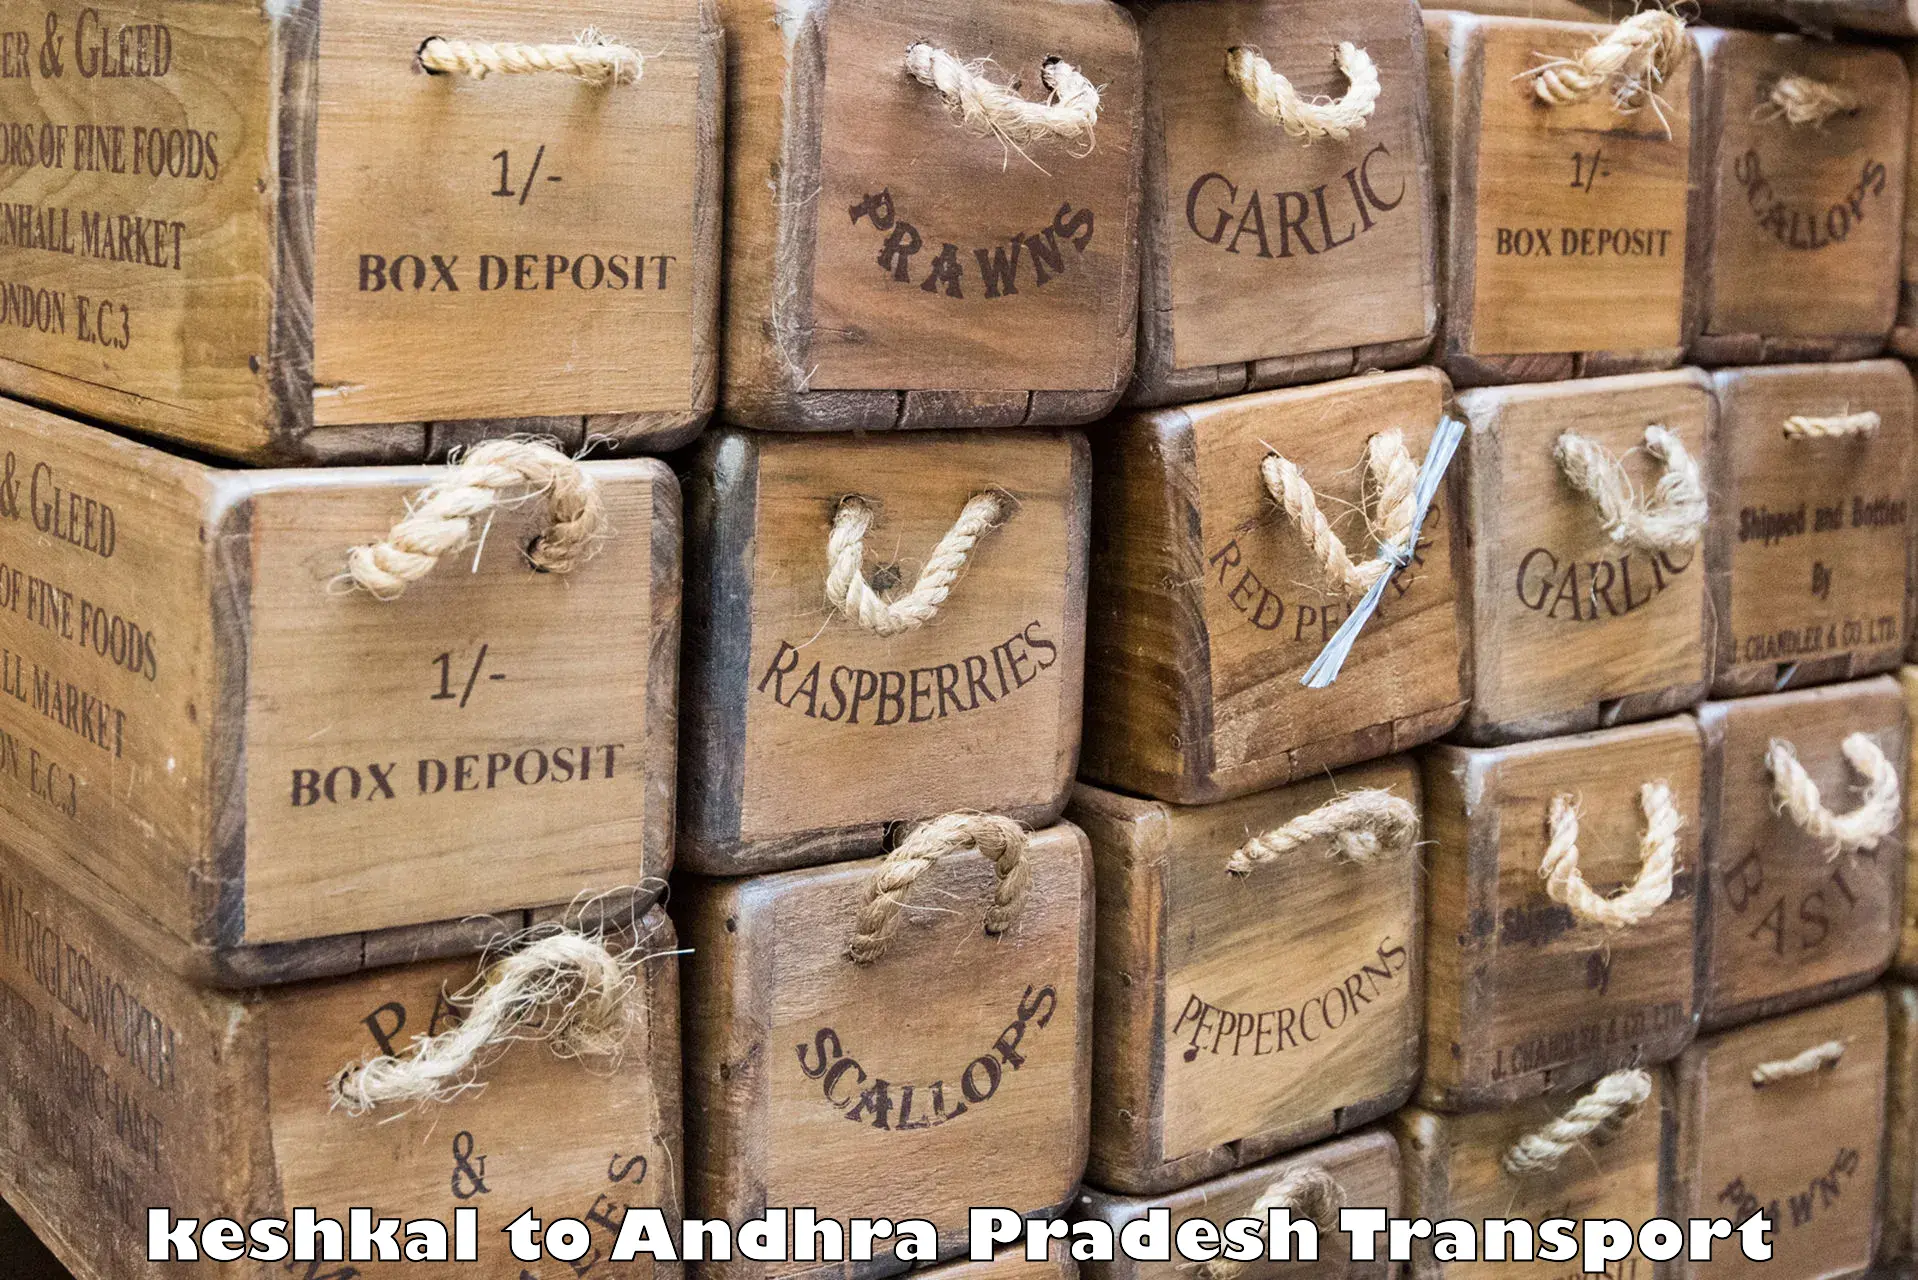 Furniture transport service keshkal to Chagalamarri